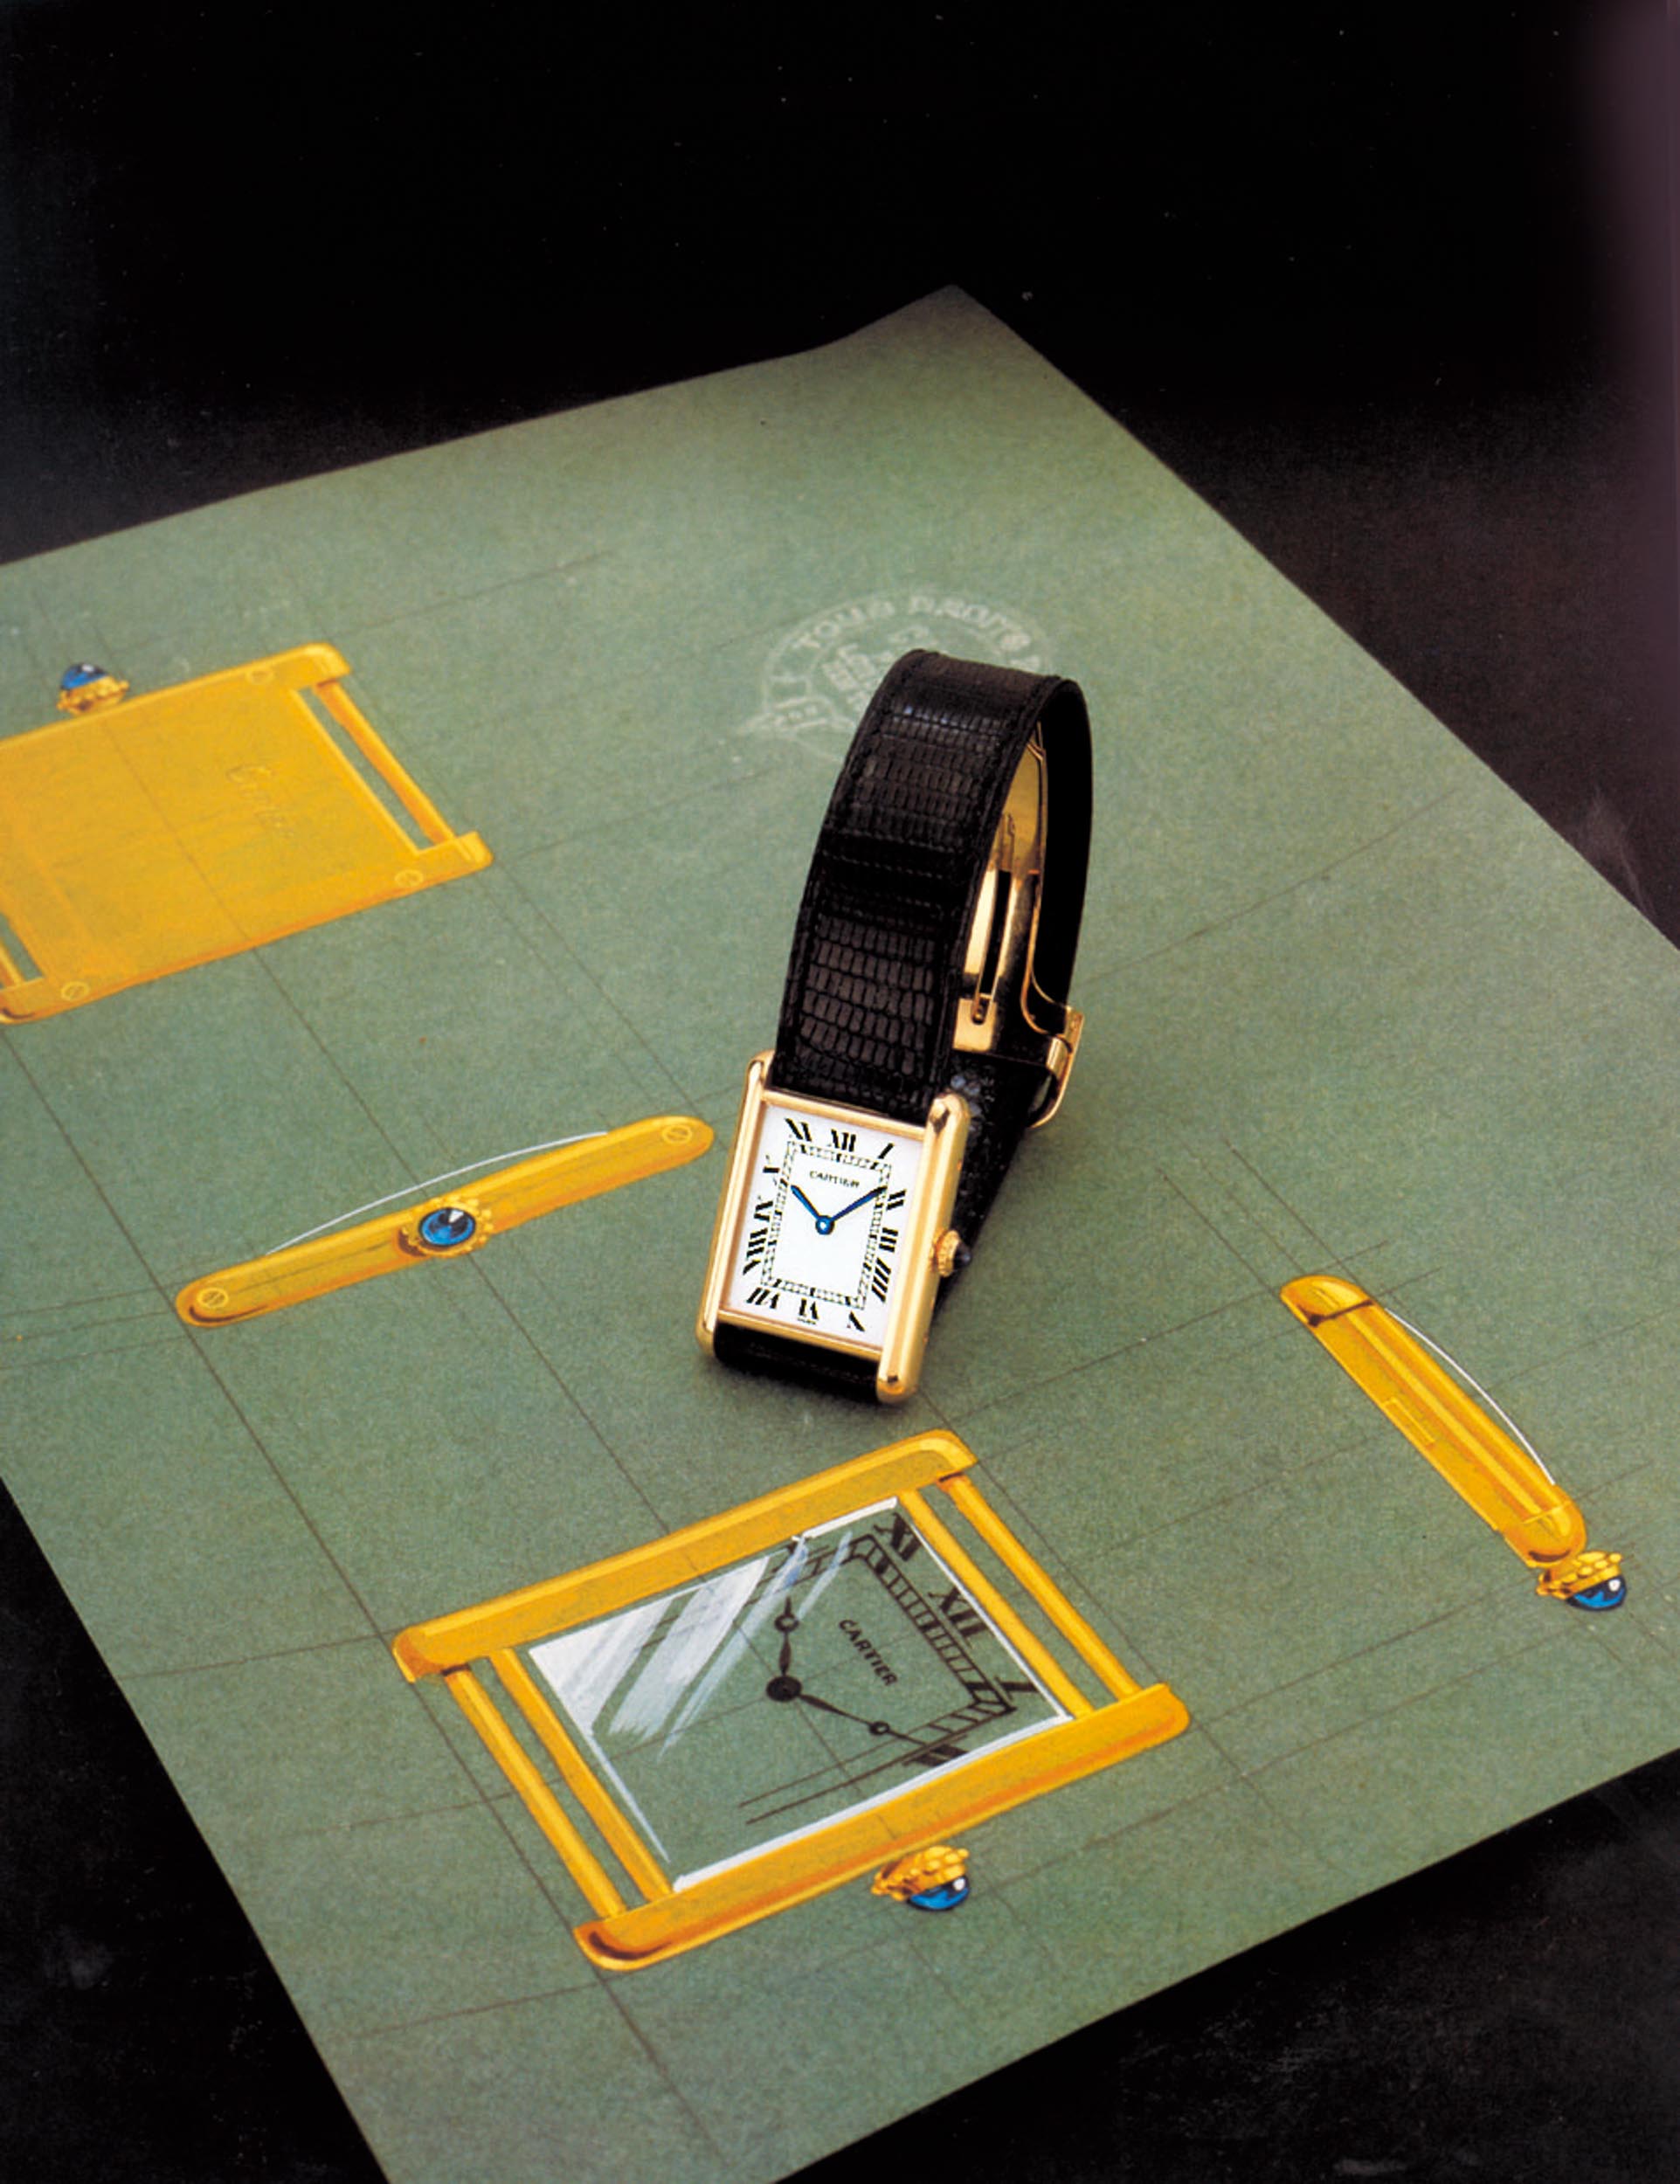 Cartier] Tank Louis Cartier : r/Watches